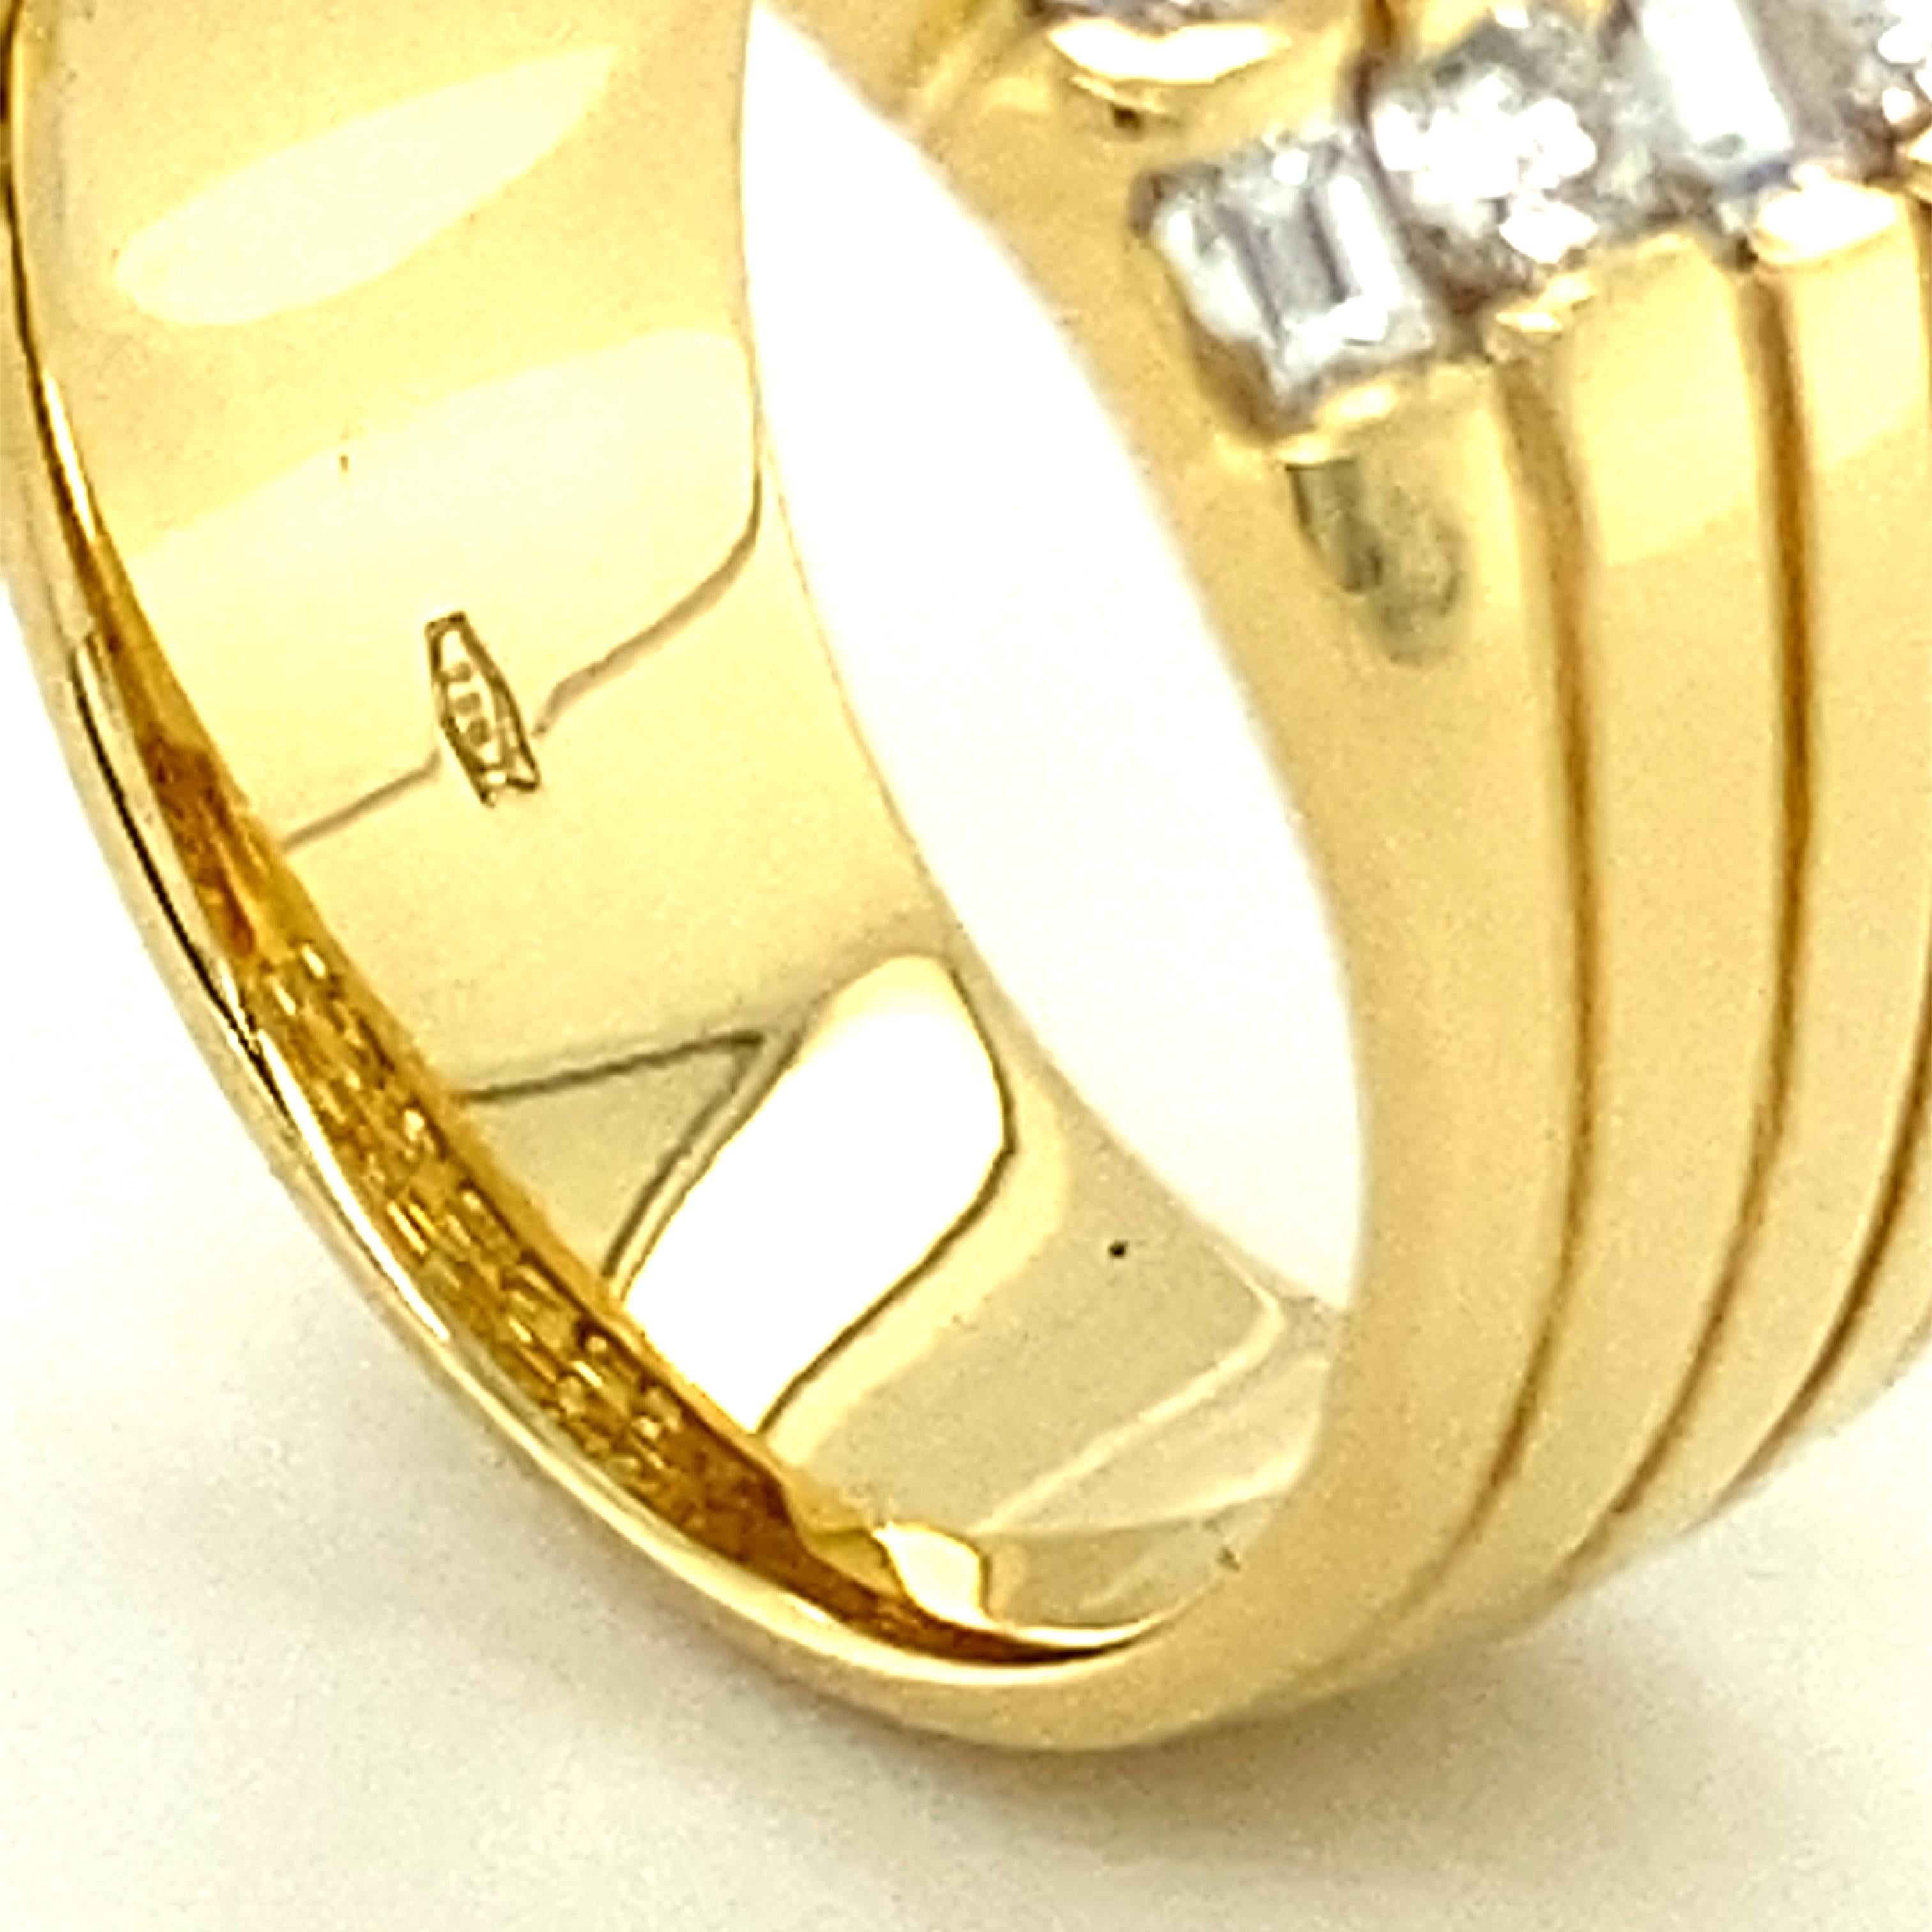 Sparkling Diamond Ring in 18 Karat Yellow Gold 7